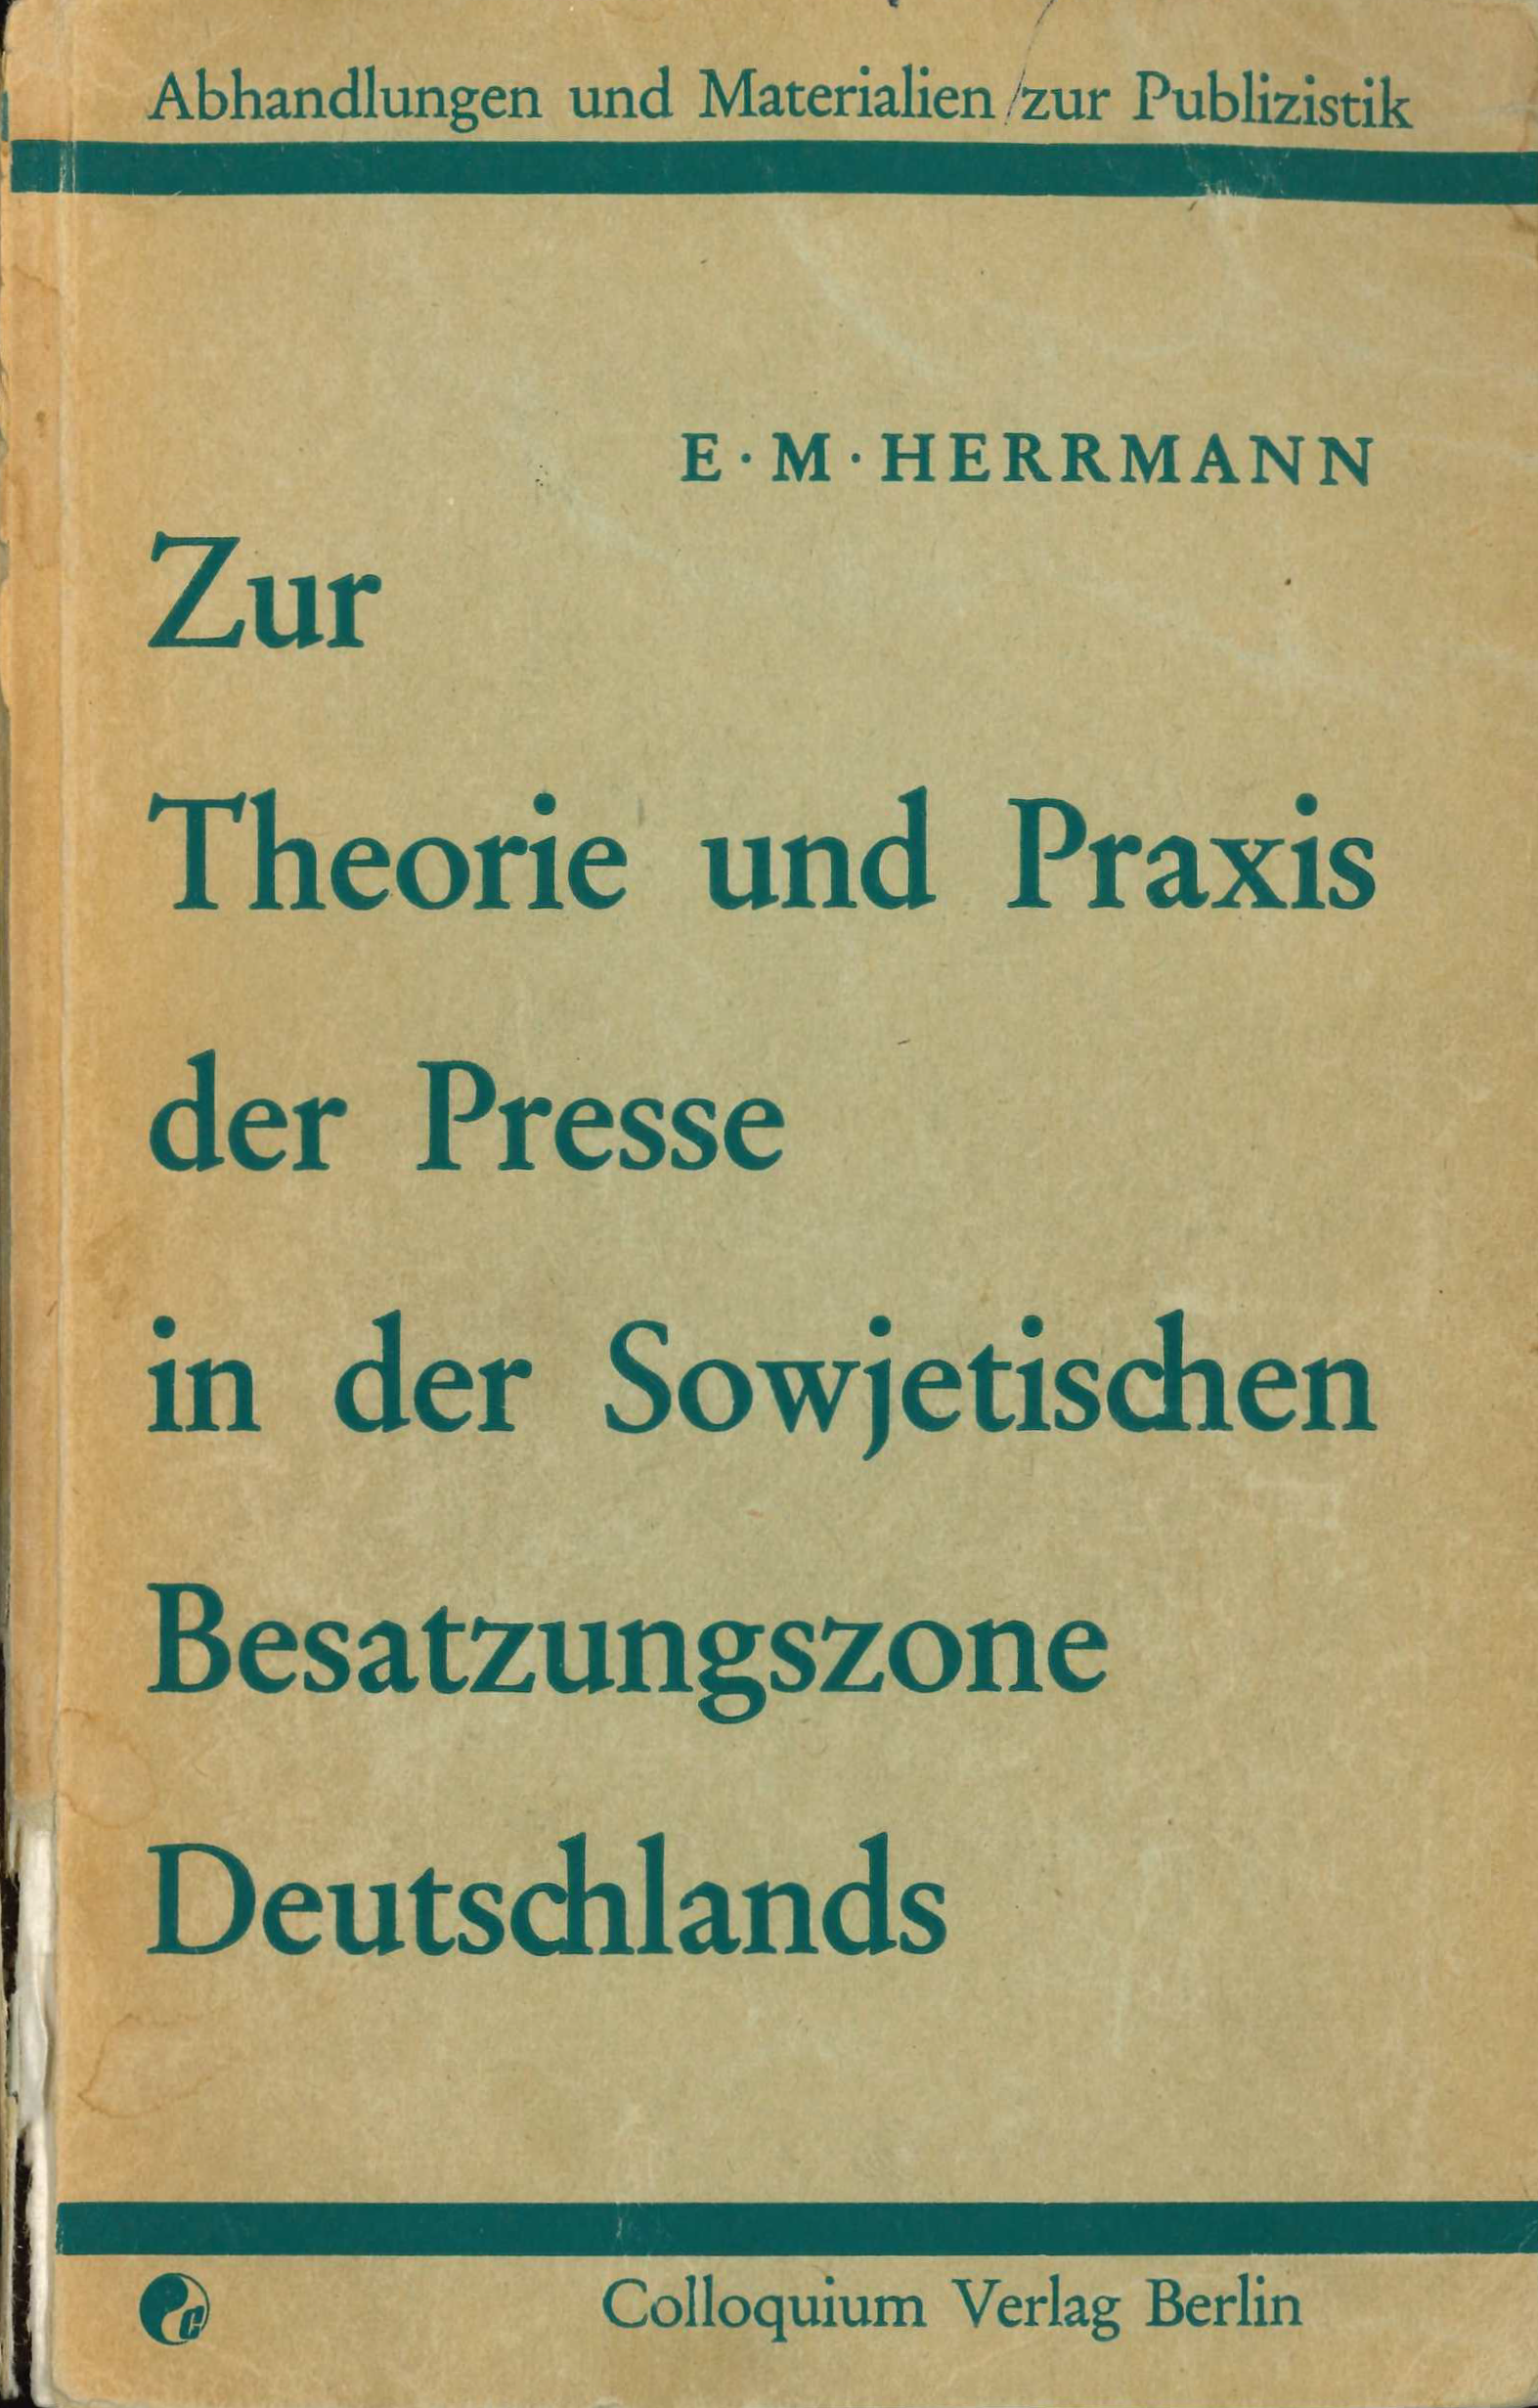 Löckenhoff (geb. Herrmann), E. (1963). Zur Theorie und Praxis der Presse in der Sowjetischen Besatzungszone Deutschlands. Colloquium.